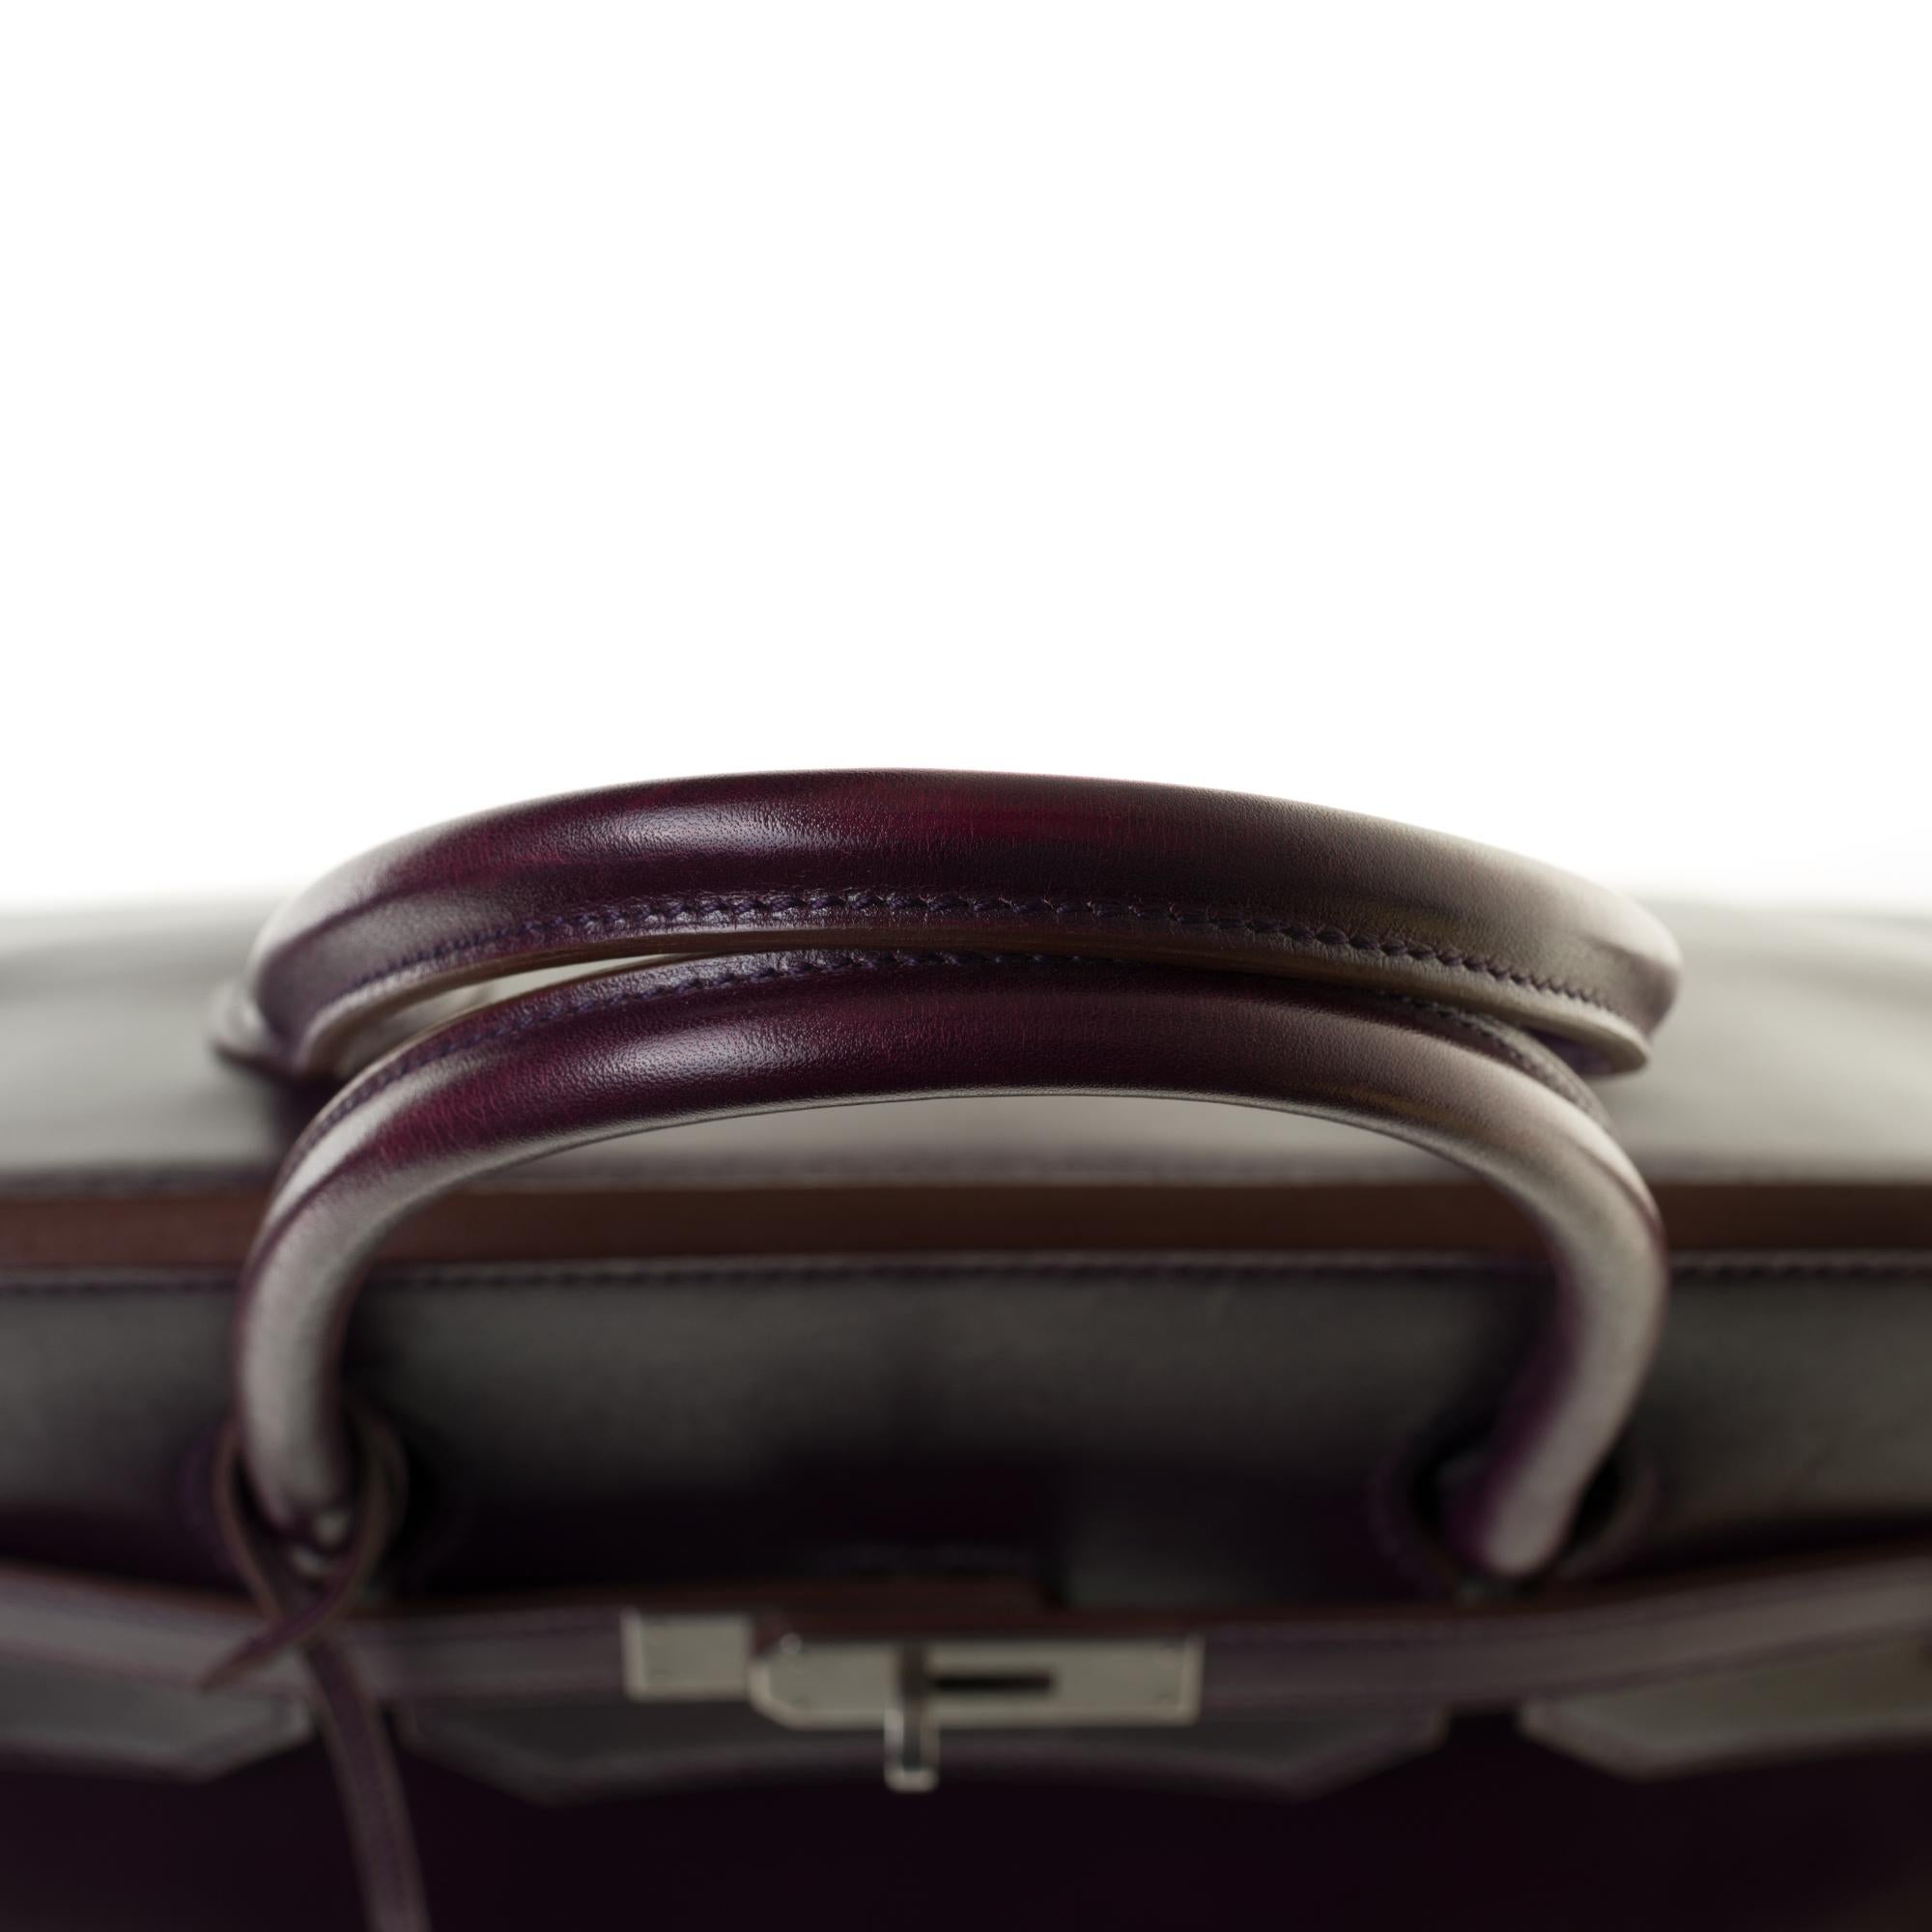 Rare Hermes Birkin 40 handbag in purple Box calfskin and brushed silver hardware 4